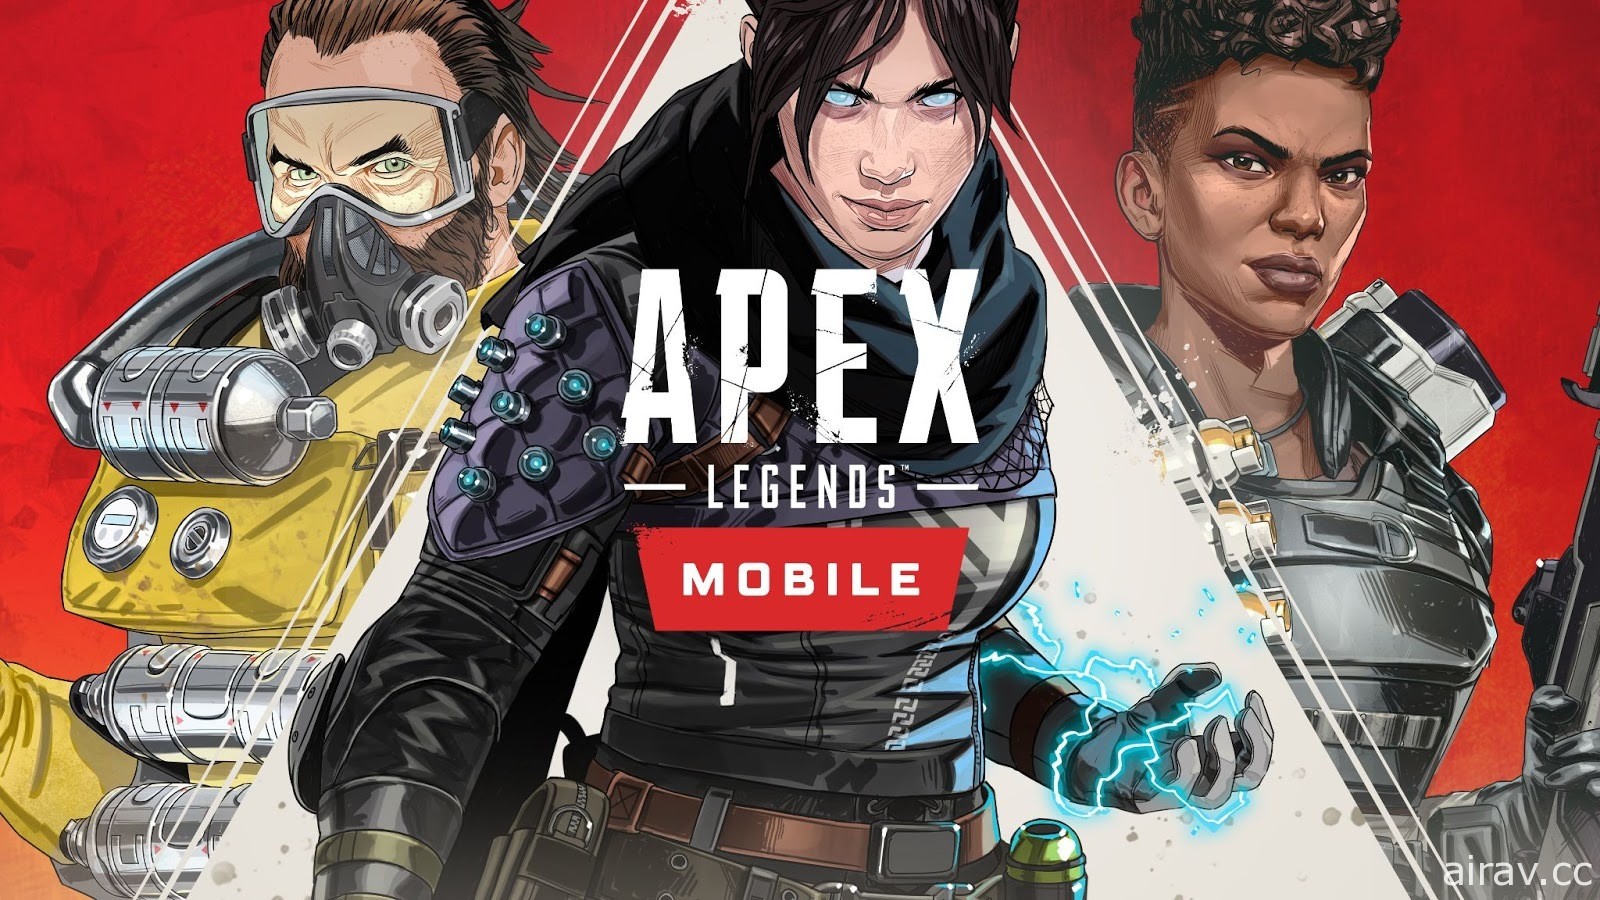 《Apex 英雄》行动版宣布 4 月下旬展开地区 Beta 测试 释出一系列常见问答